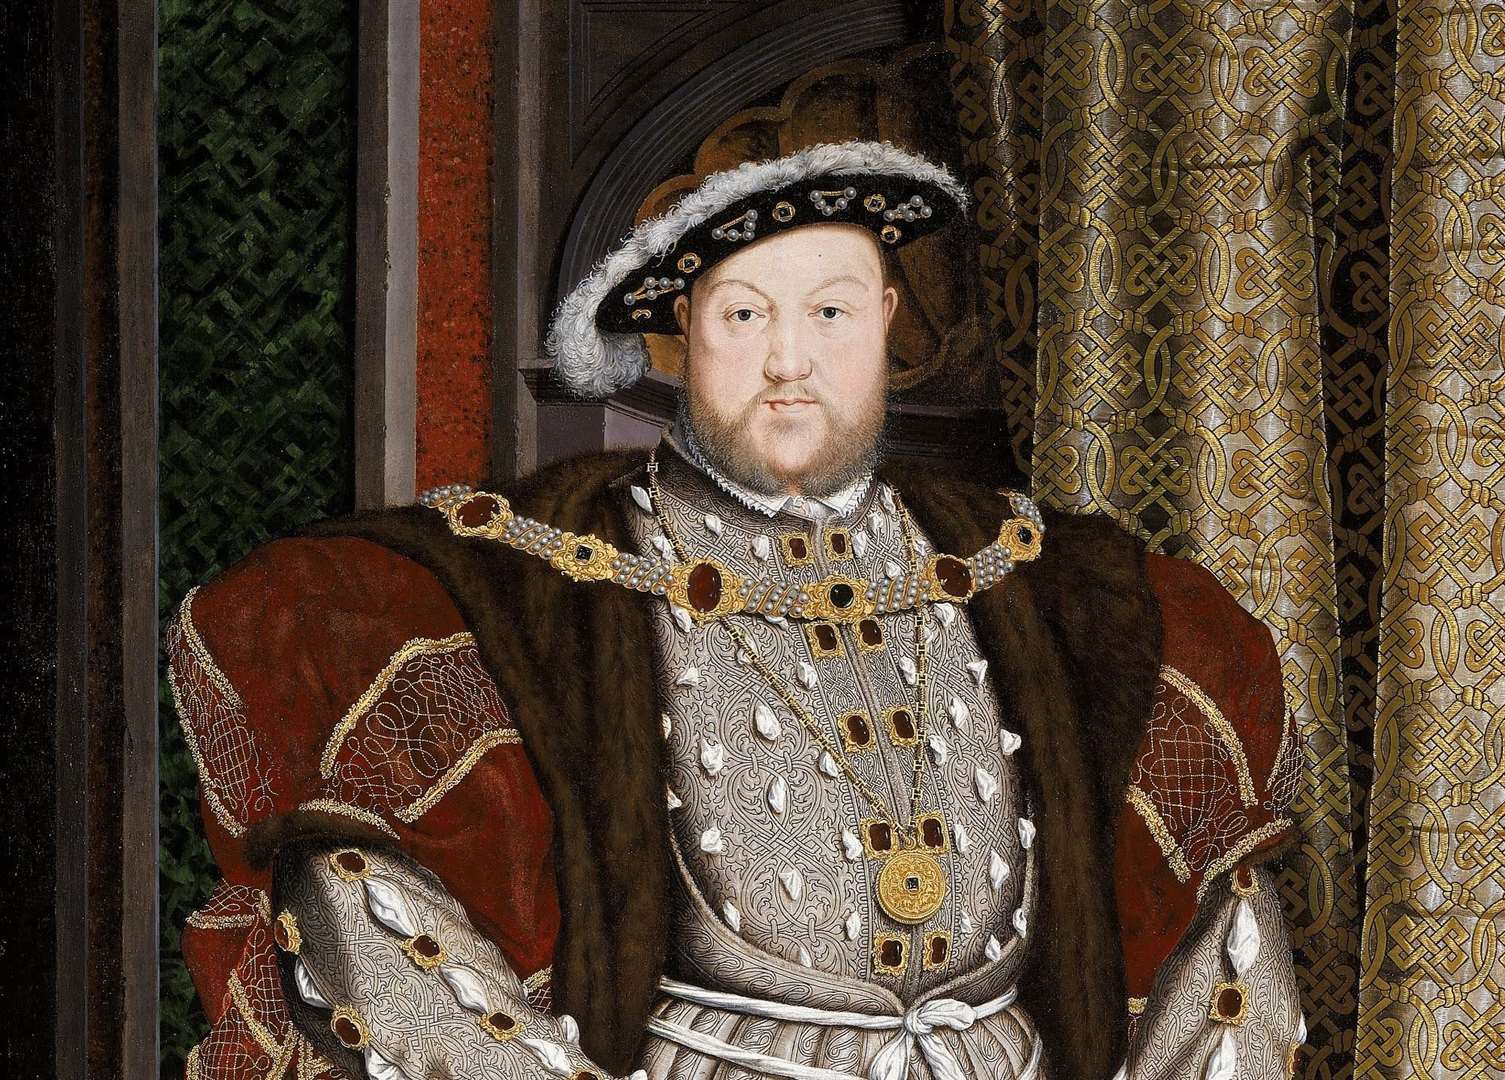 Barton warned Henry VIII of impending doom if he married Anne Boleyn